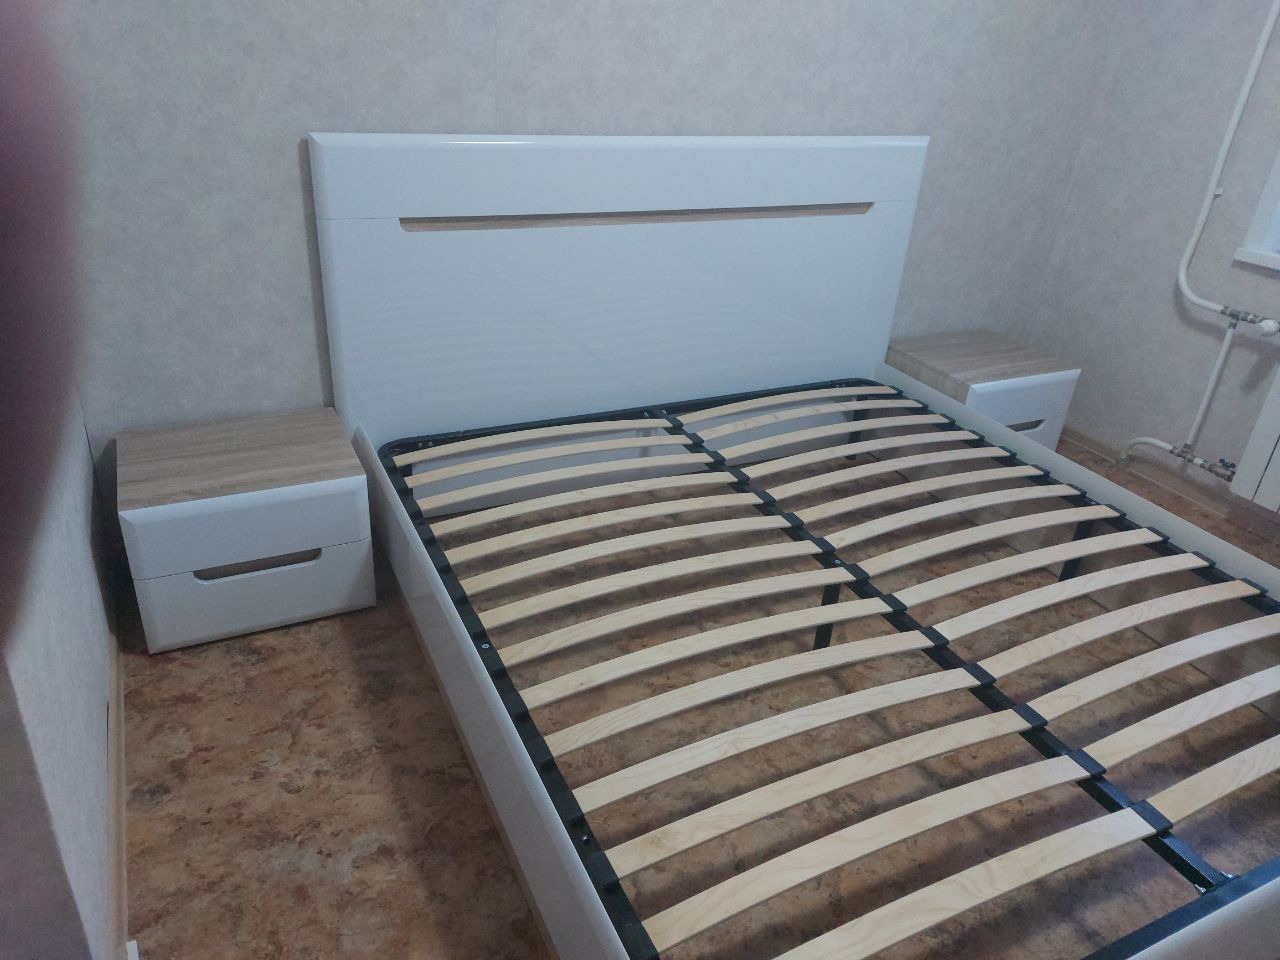 Односпальная кровать "Парма" 90 х 190 с ортопедическим основанием цвет белый / венге